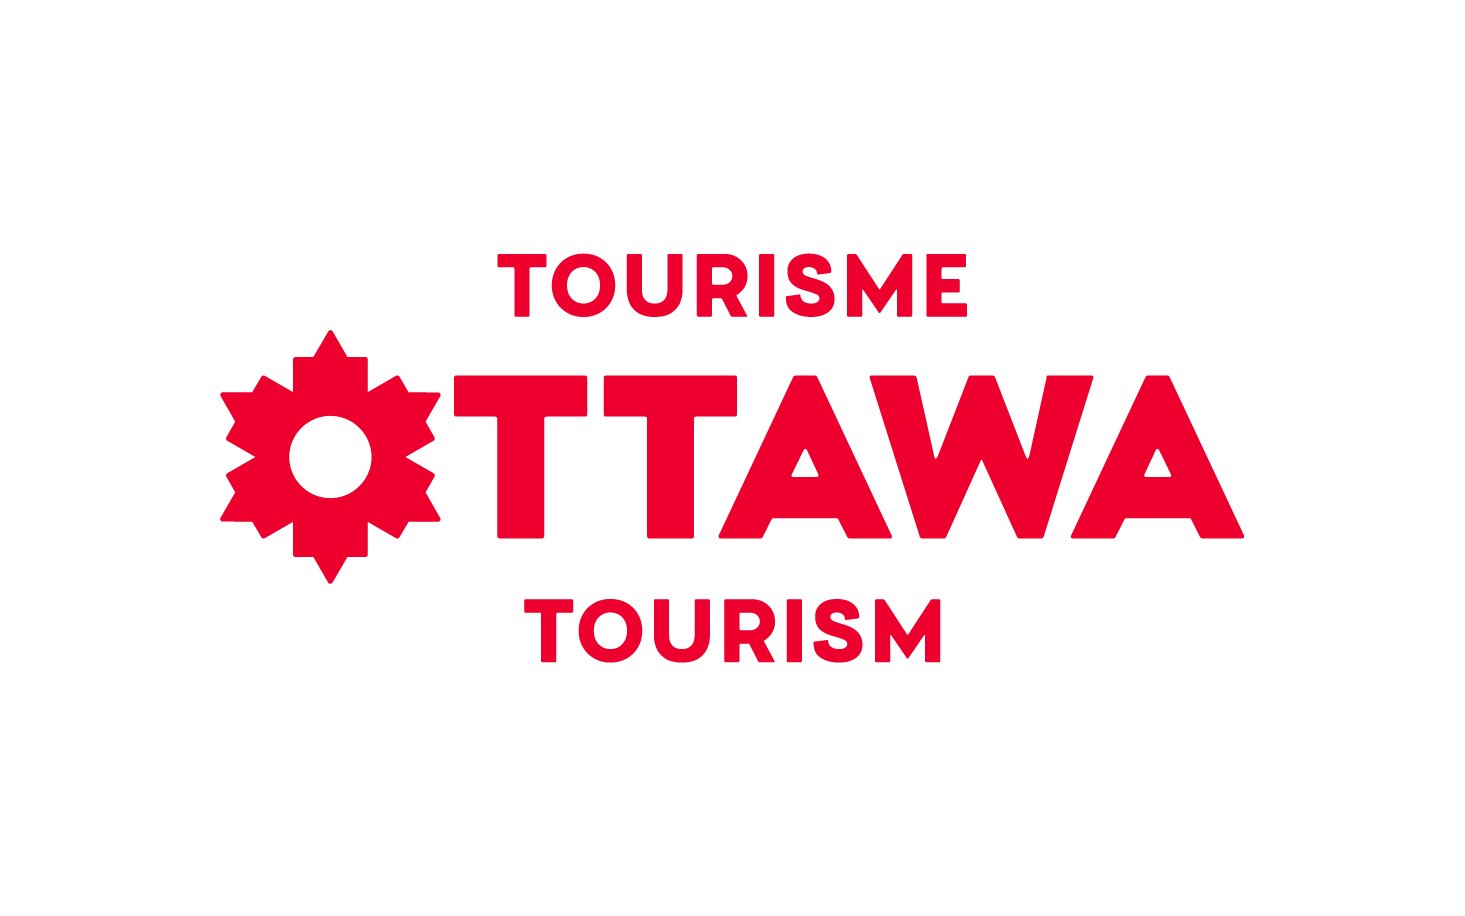 Ottawa_Tourism_horiz_TourismTag_Red_RGB (1).jpg